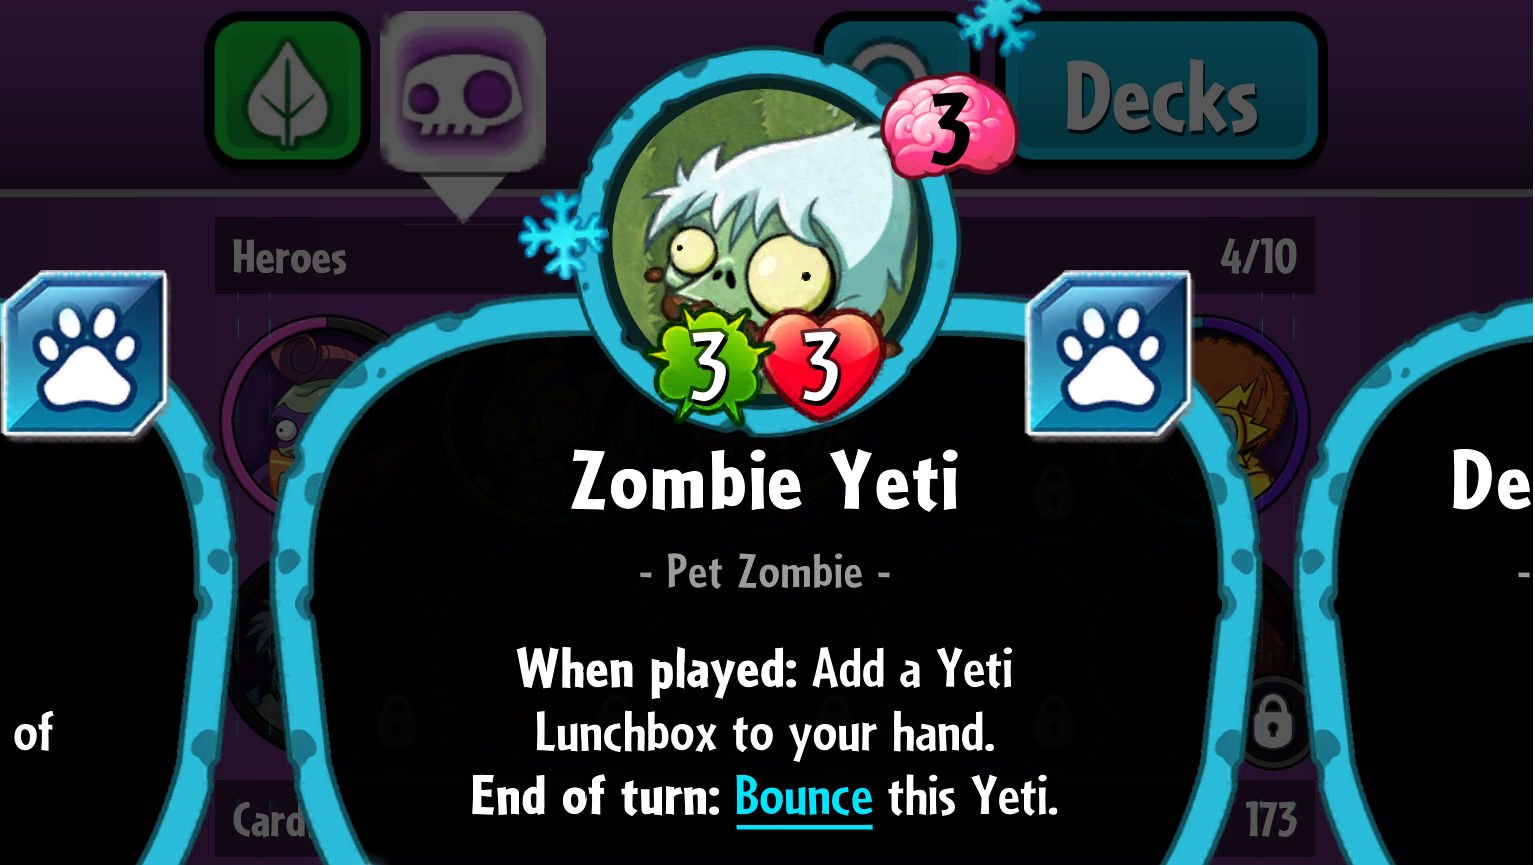 Plants vs. Zombies Heroes Zombie Yeti